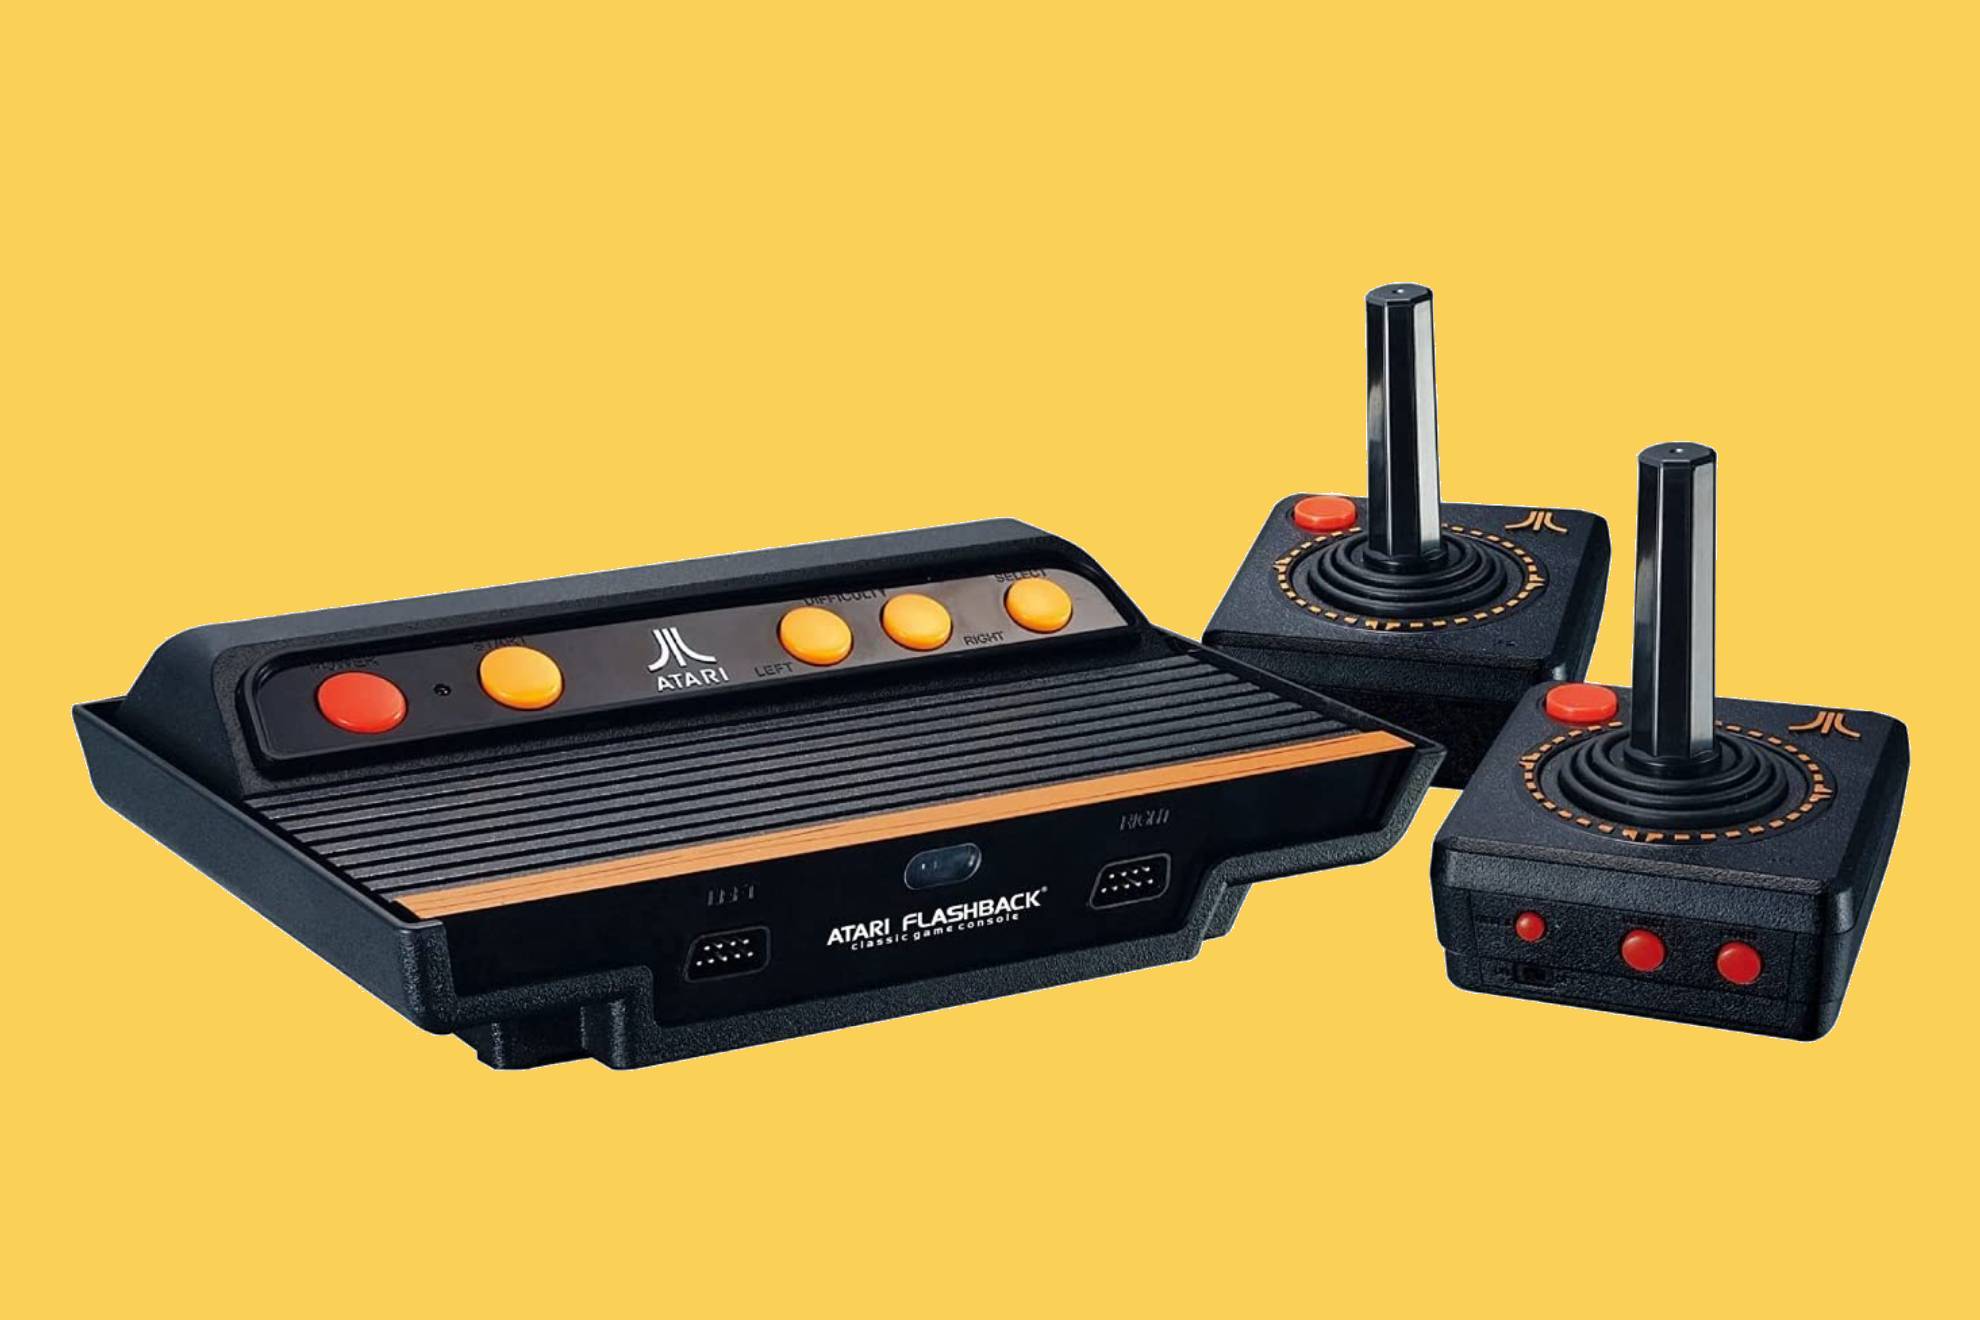 Esta consola retro de Atari es una de las mejores ofertas y los mayores chollos del da en Amazon.